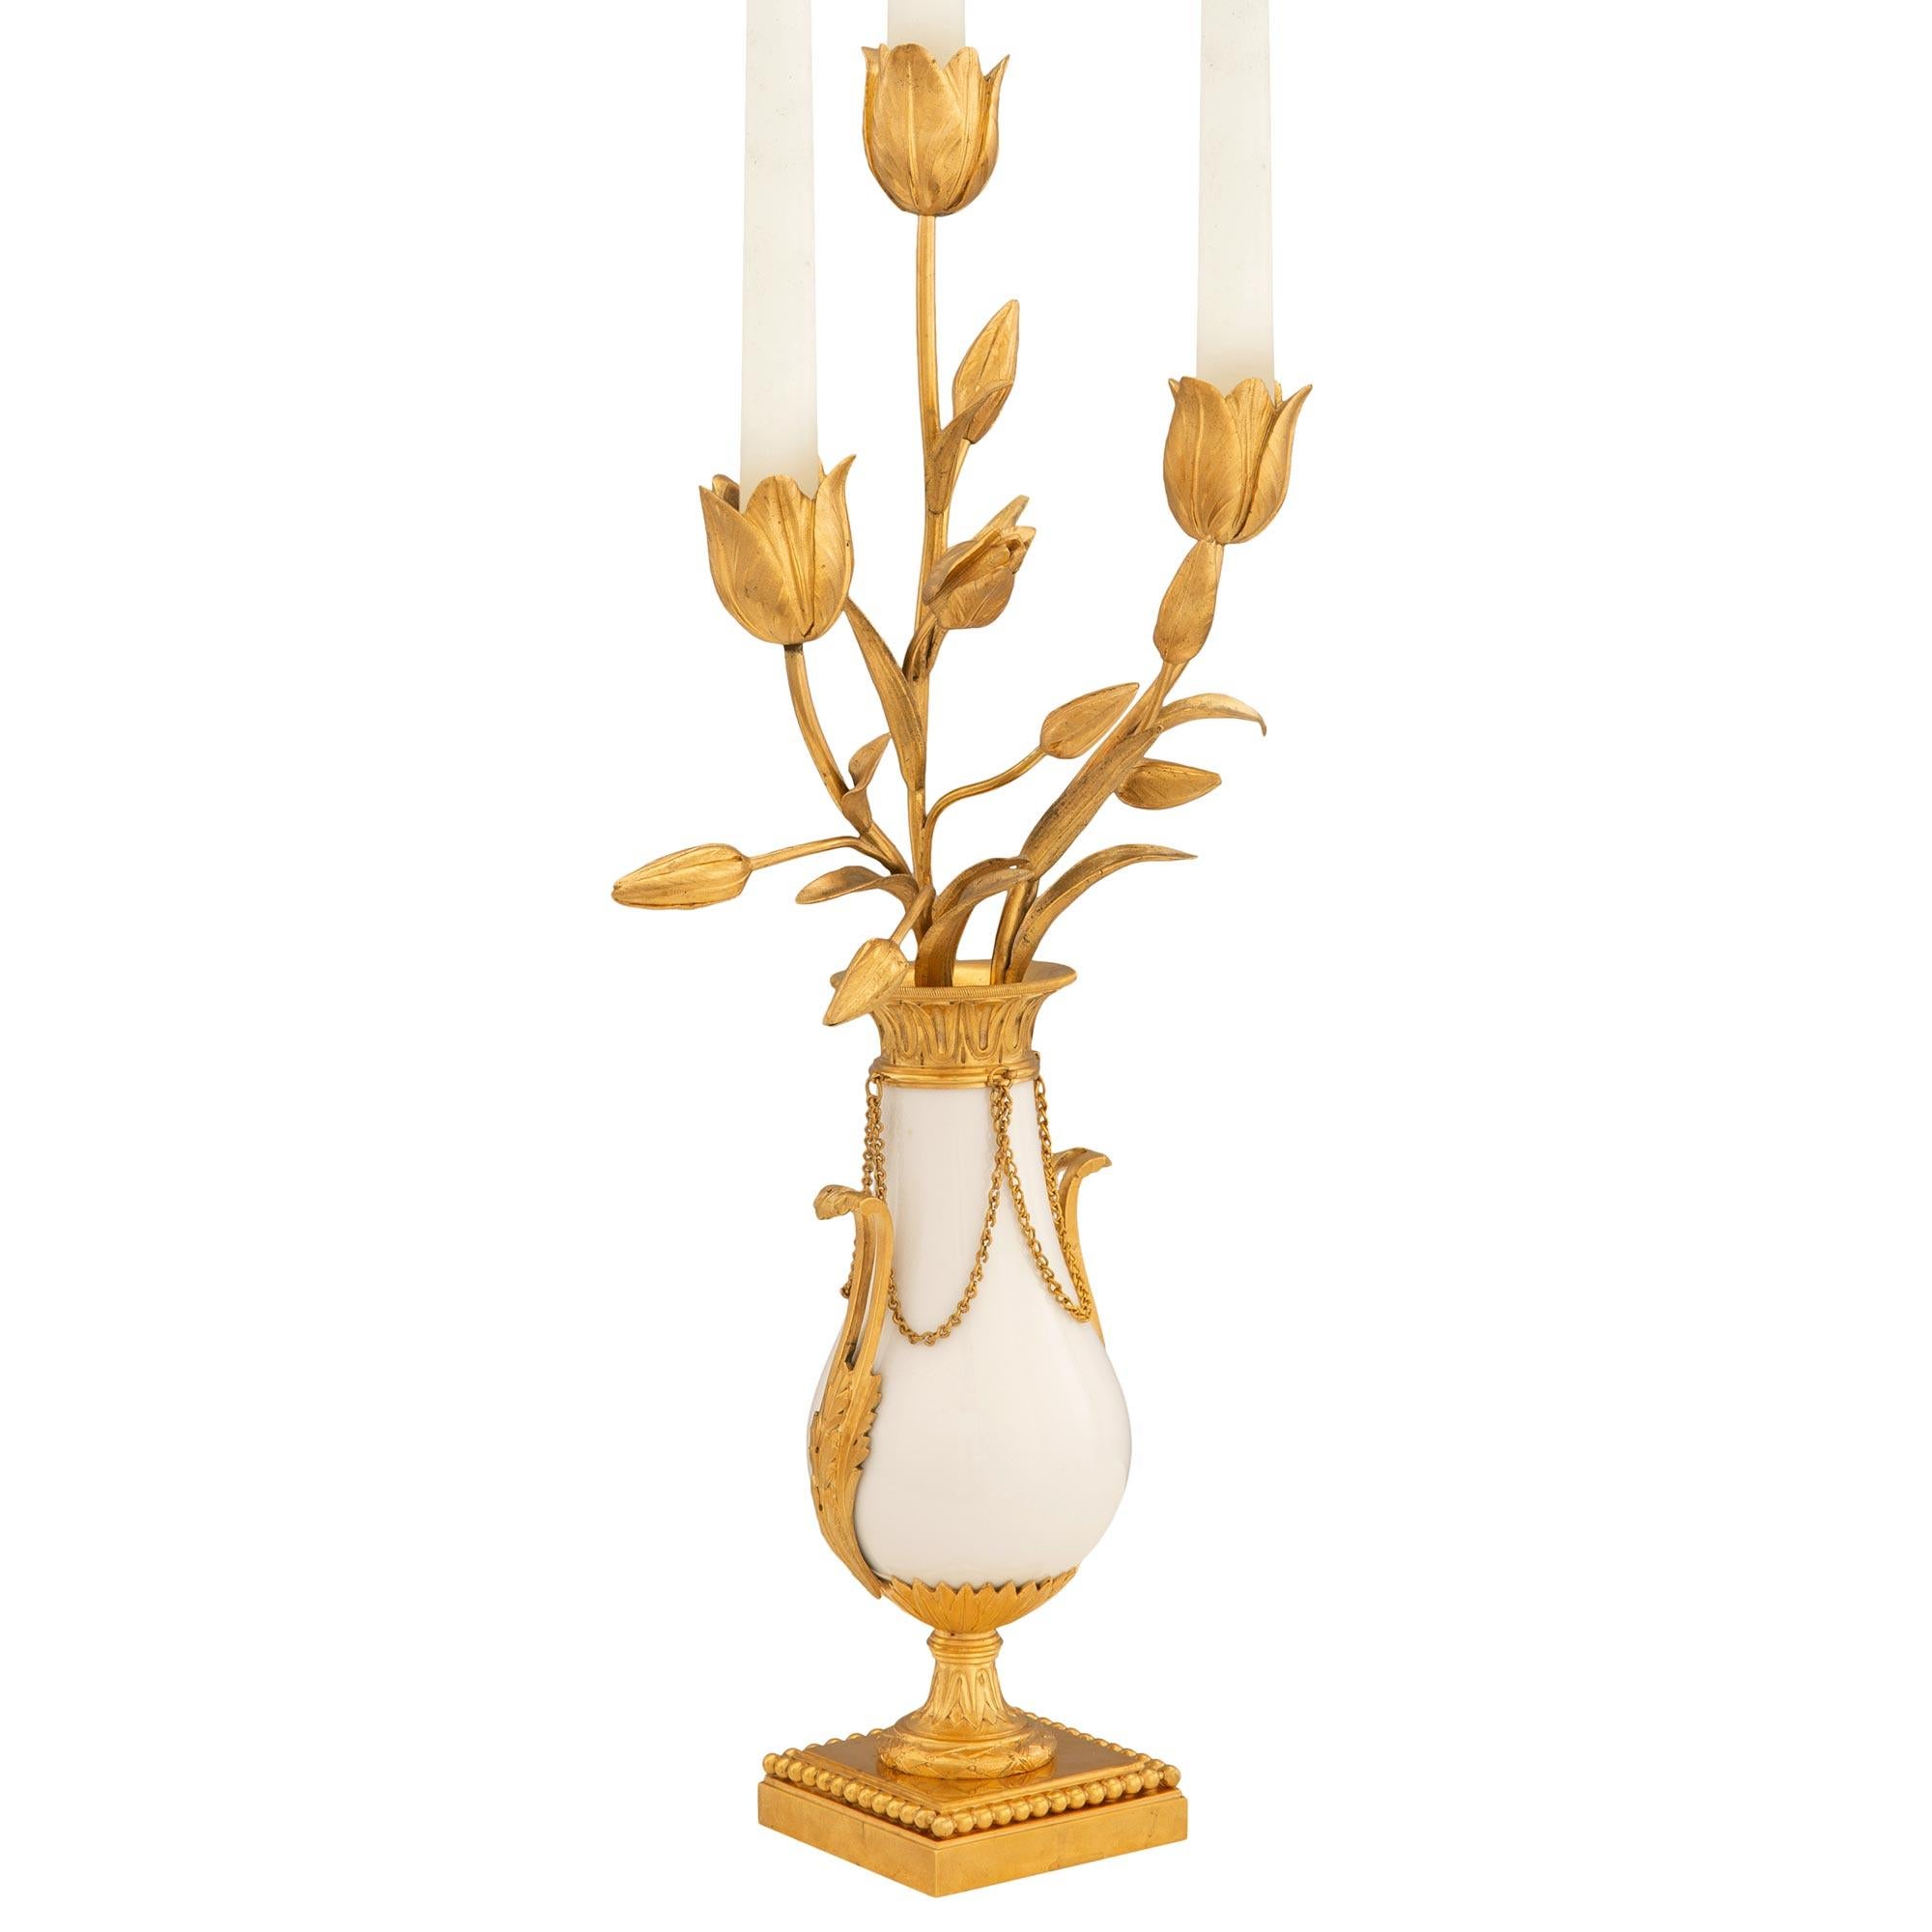 Une paire très élégante de candélabres français du 19ème siècle, de style Louis XVI, en bronze doré et en marbre blanc de Carrare. Chaque candélabre à trois bras est surélevé par une base carrée en bronze doré avec une fine bande perlée enveloppante